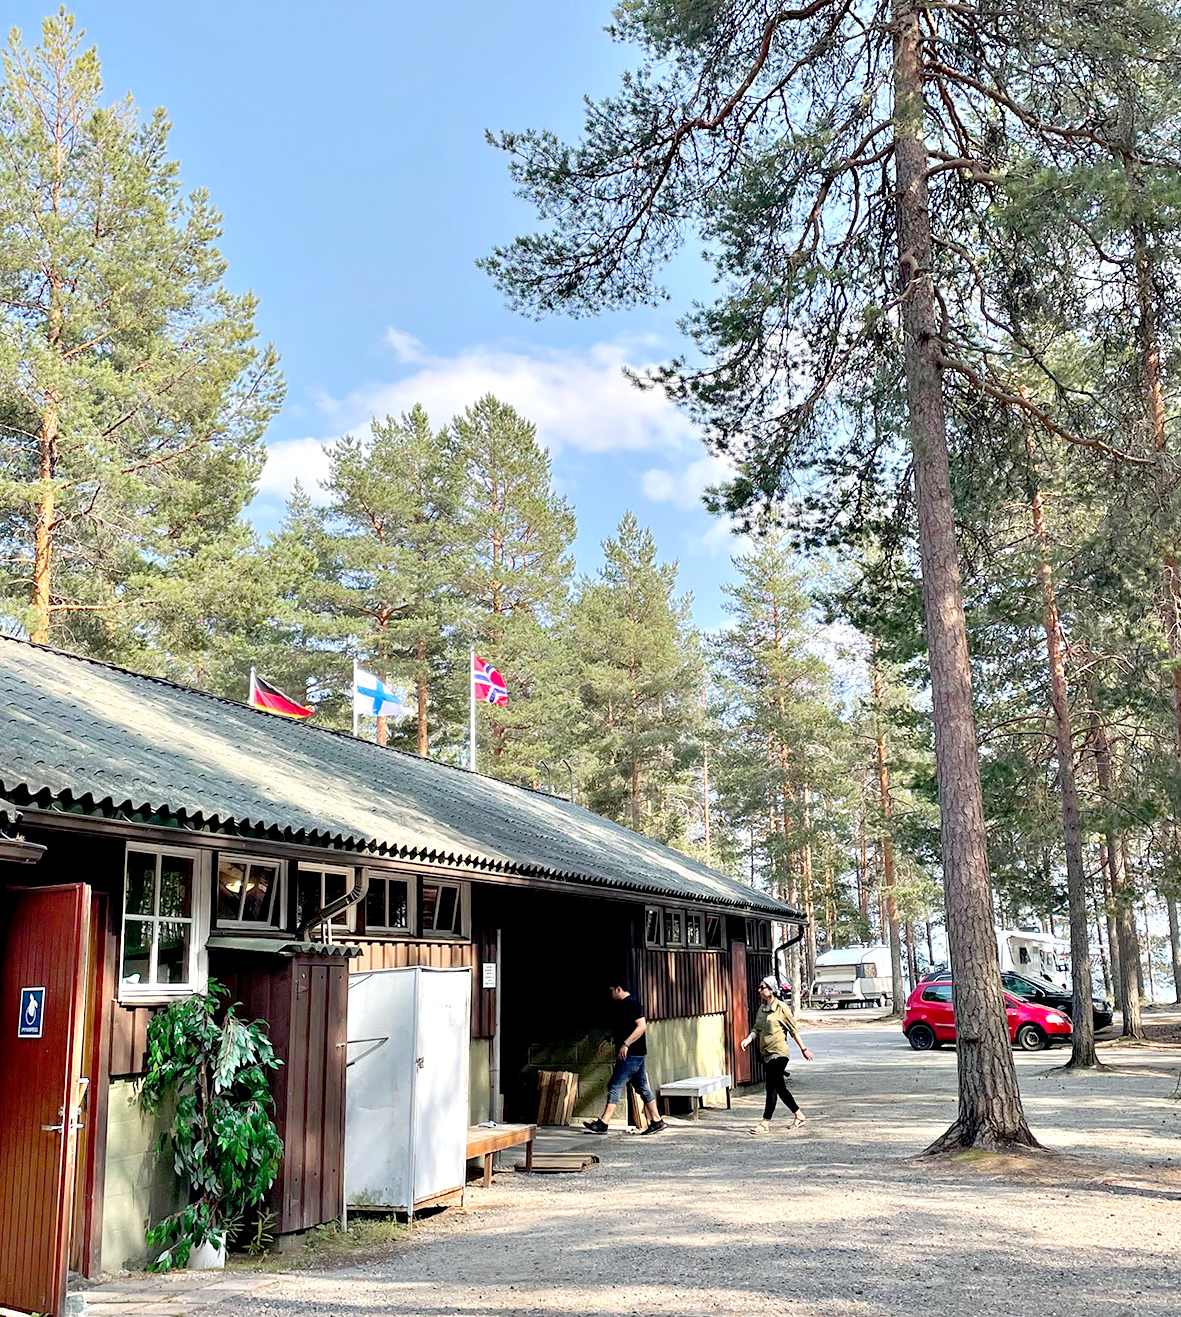 Koli Camping on kesällä kansainvälinen paikka, mistä osaltaan kielivät myös saloissa liehuvat liput. Kuva VisitKoli/Nina Hakala